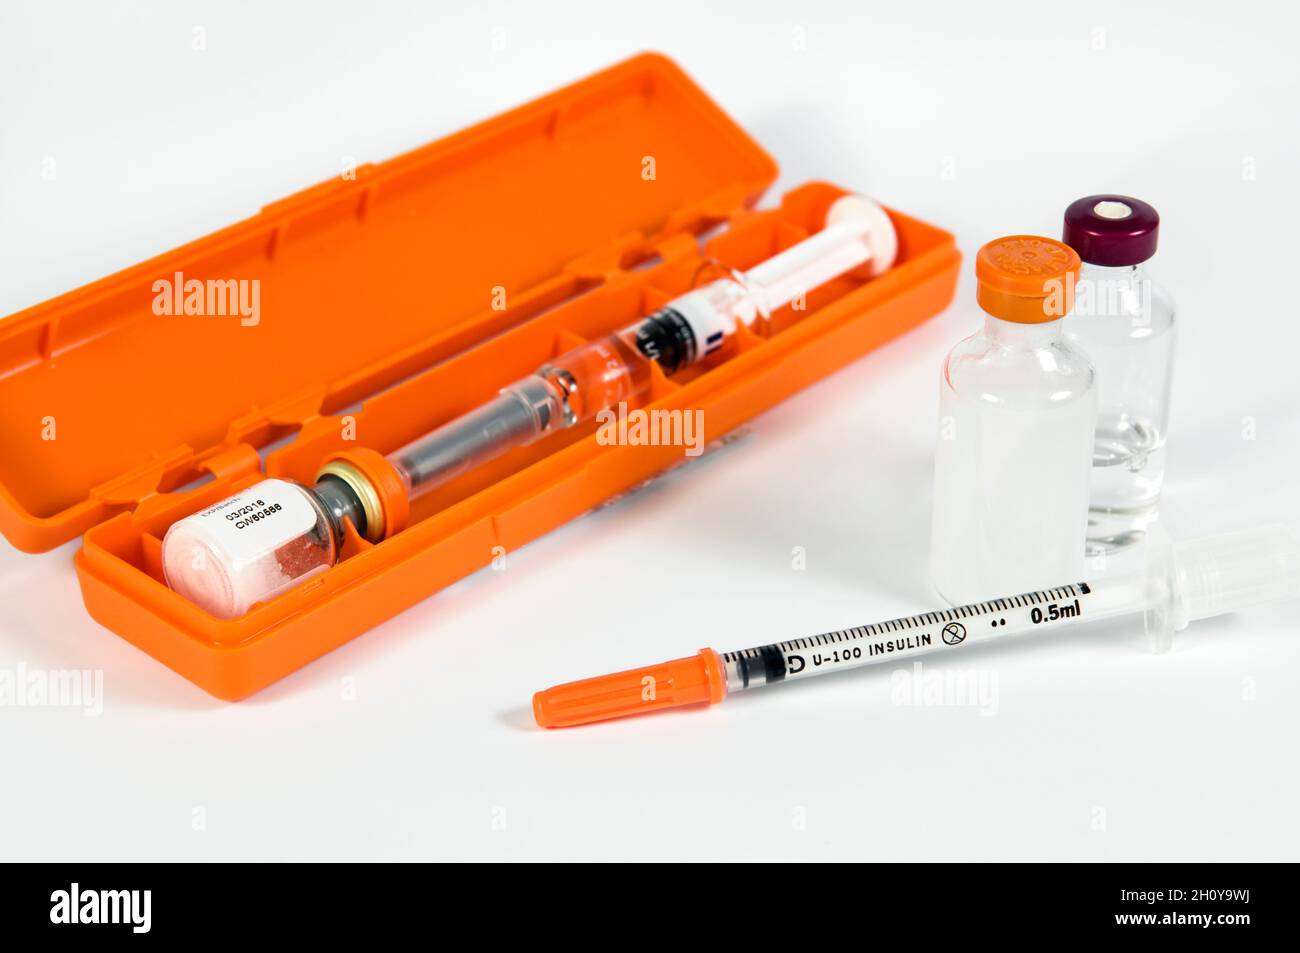 Kit de inyección de insulina diabética. Kit de inyección de clorhidrato de glucagón, con viales de insulina de acción corta y larga y aguja de inyección con tapón de seguridad Foto de stock